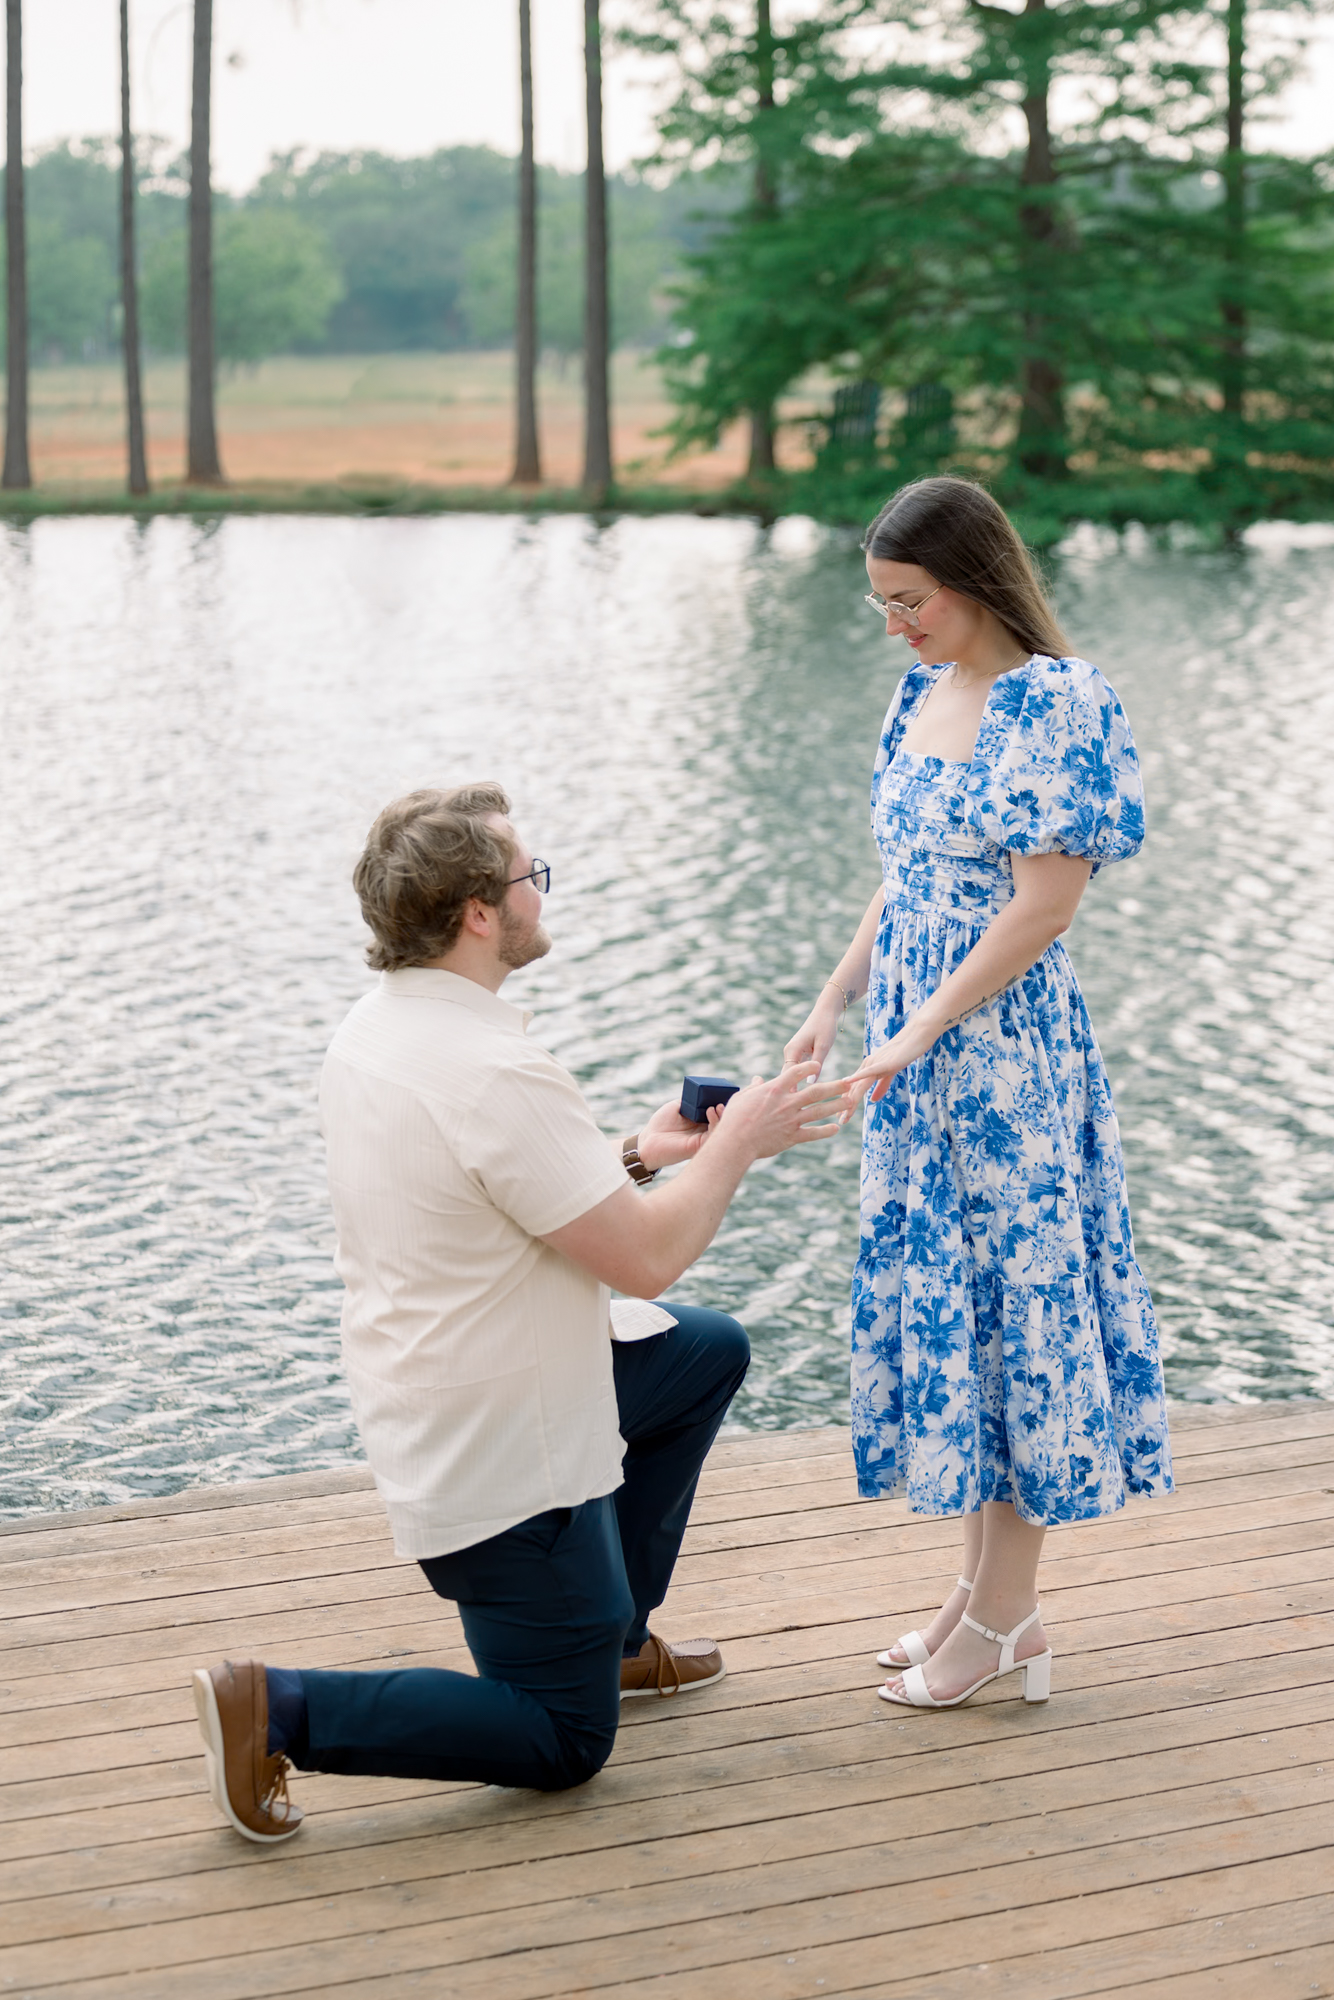 Romantic proposal at Das Peach Haus in Fredericksburg, Texas